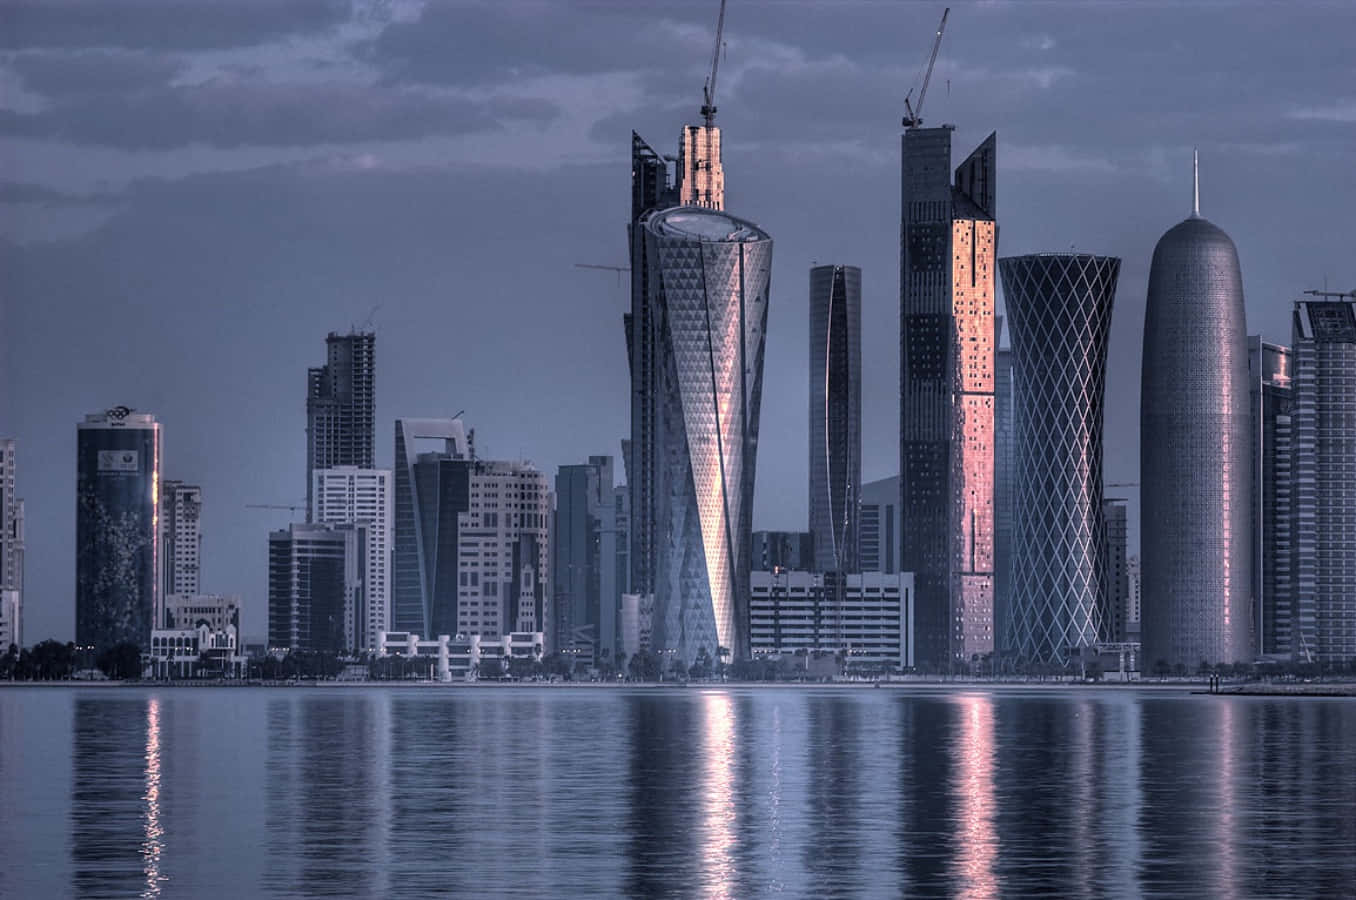 Qatari skyline illuminated by night